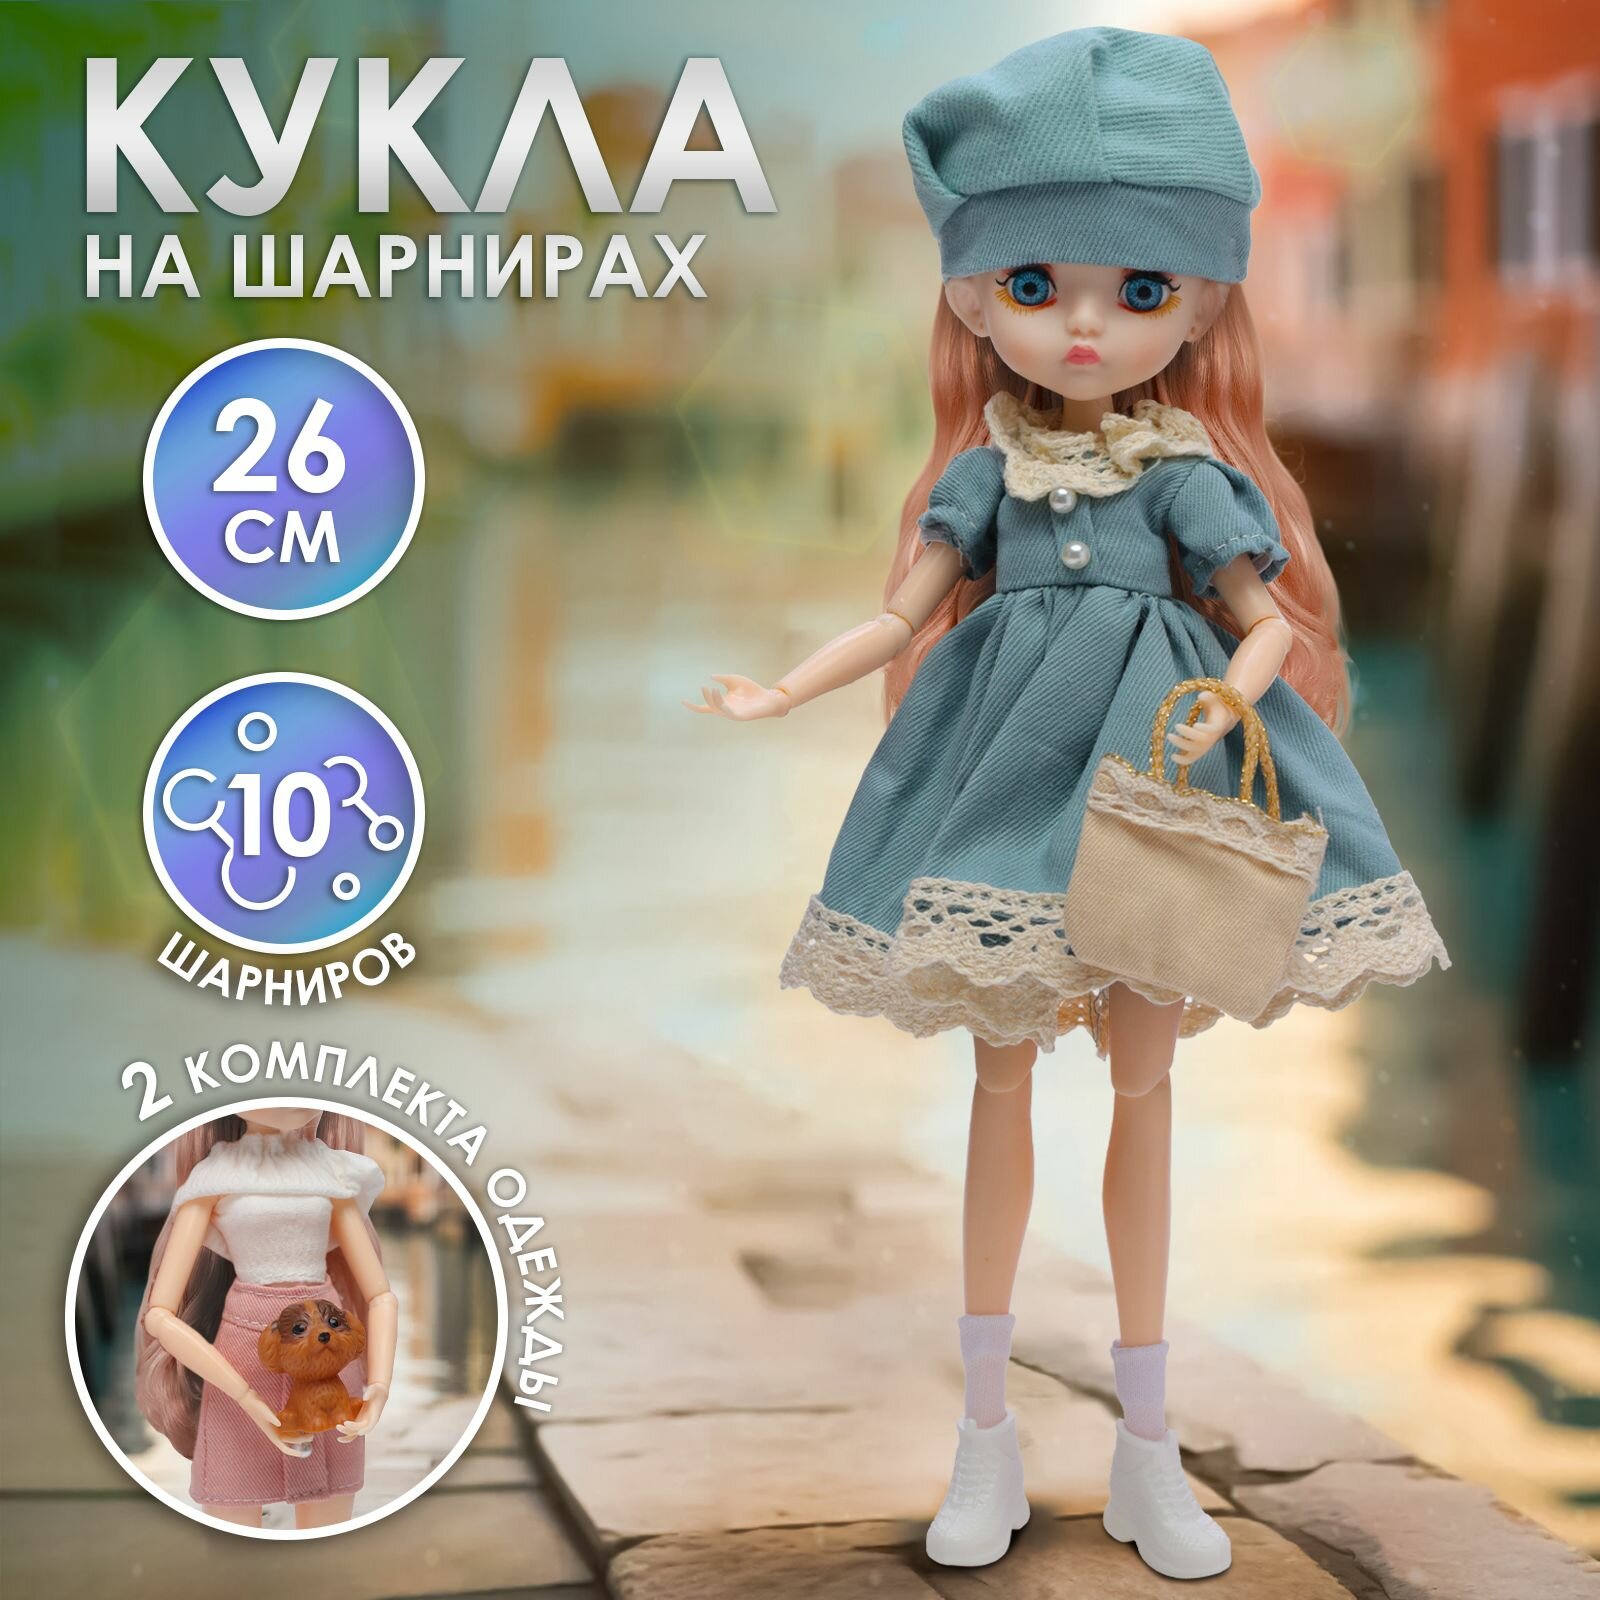 Кукла шарнирная WiMi с одеждой и аксессуарами, бжд на шарнирах, коллекционная, 26 см